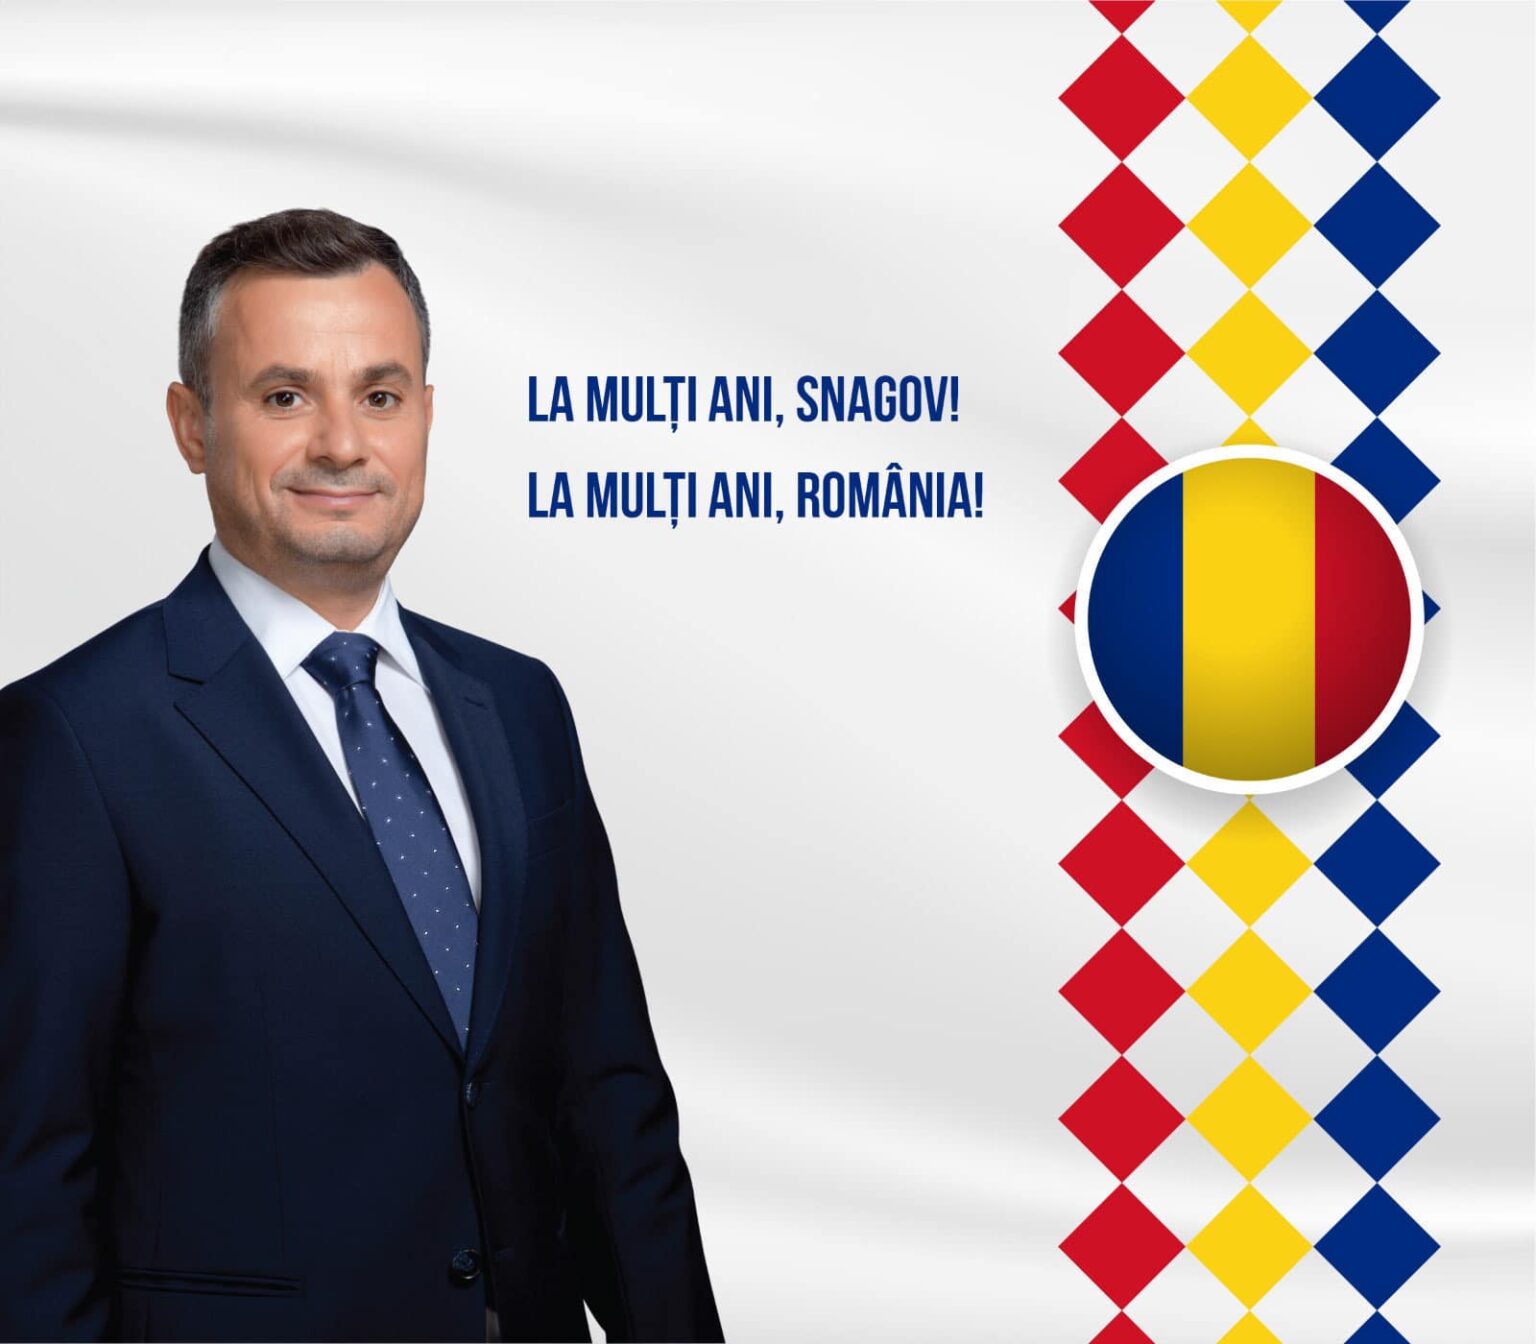 Snagovenii au sărbătorit, ca în fiecare an, Ziua Naţională a României, împreună cu reprezentanţii autorităţilor locale